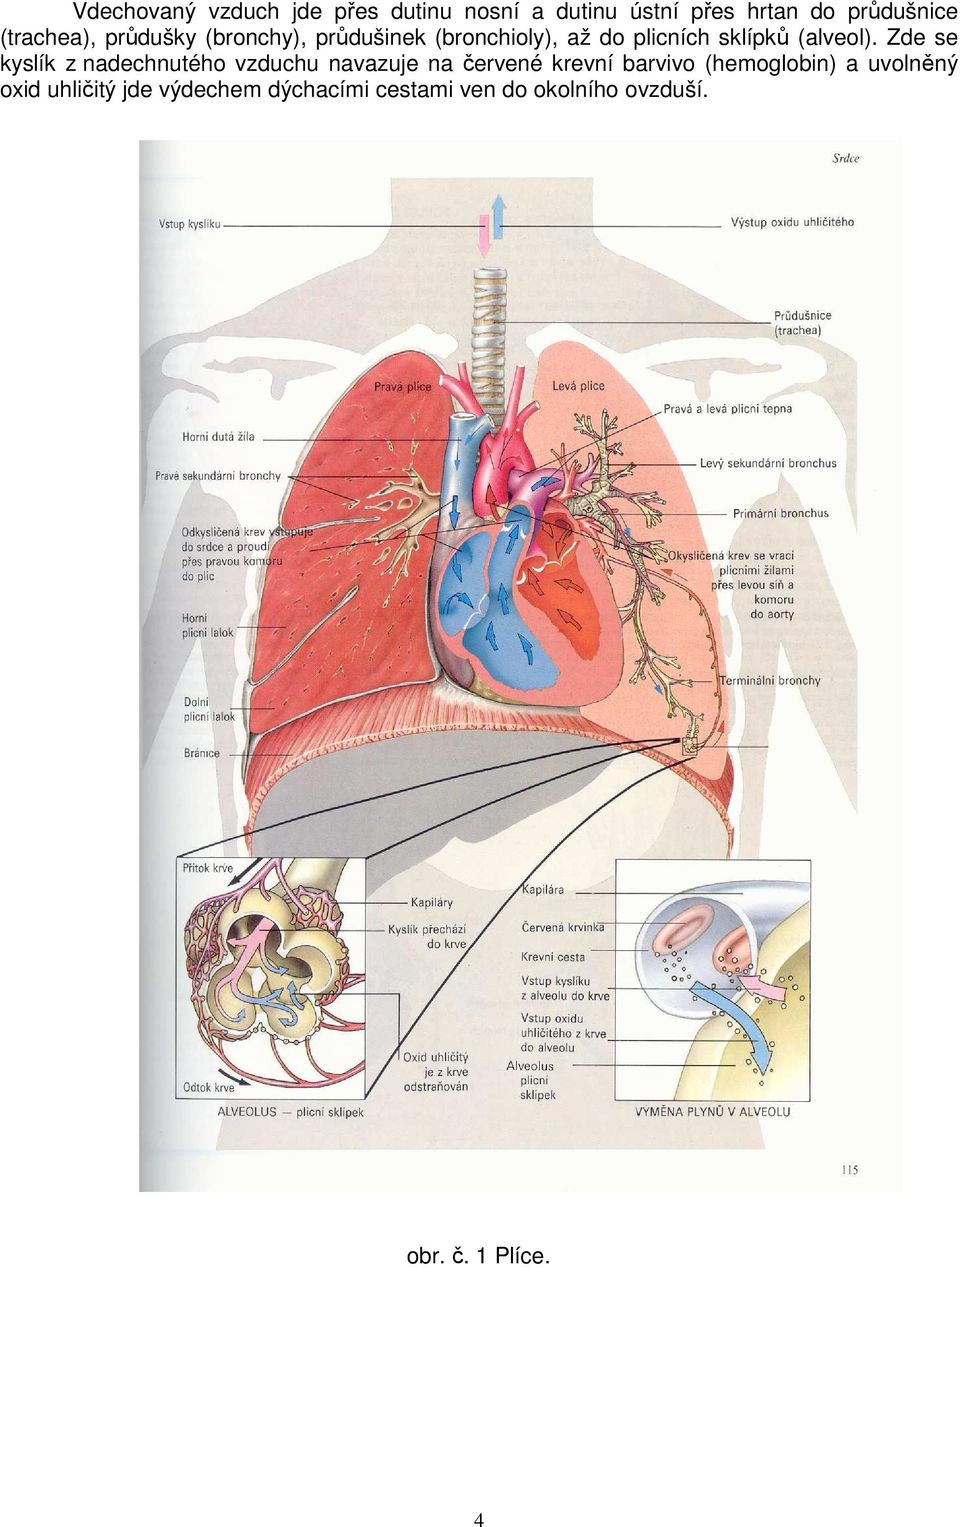 Zde se kyslík z nadechnutého vzduchu navazuje na červené krevní barvivo (hemoglobin) a